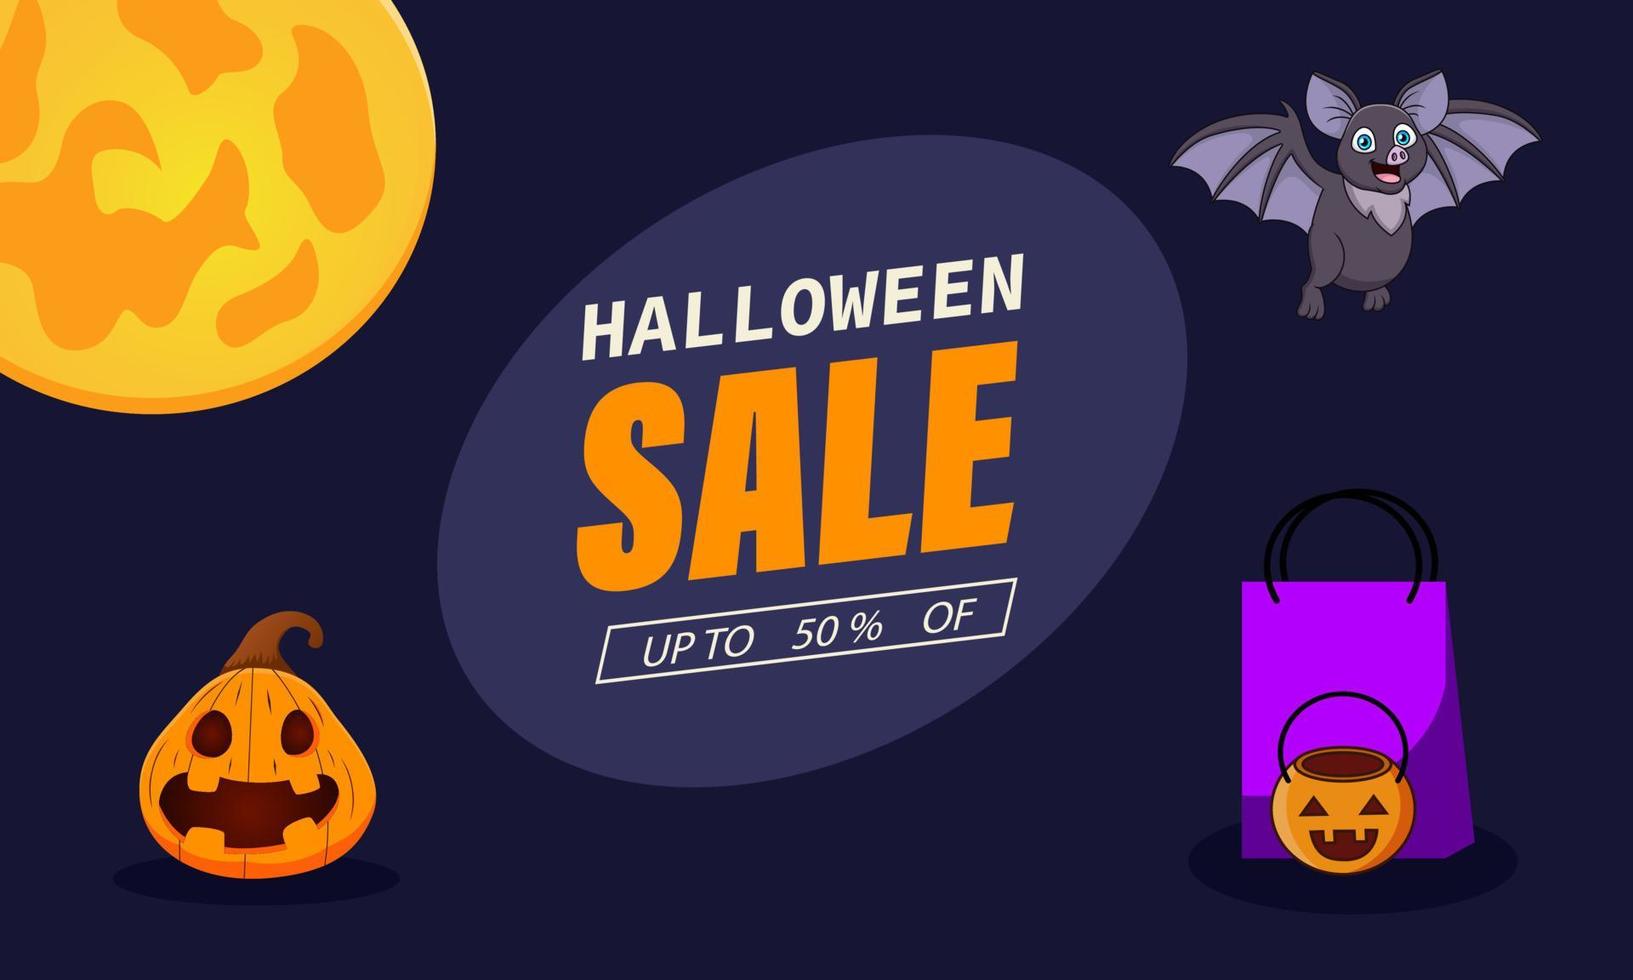 Halloween Sale, Halloween Sale offers discounts. Halloween Sale Poster, banner. Vector illustration